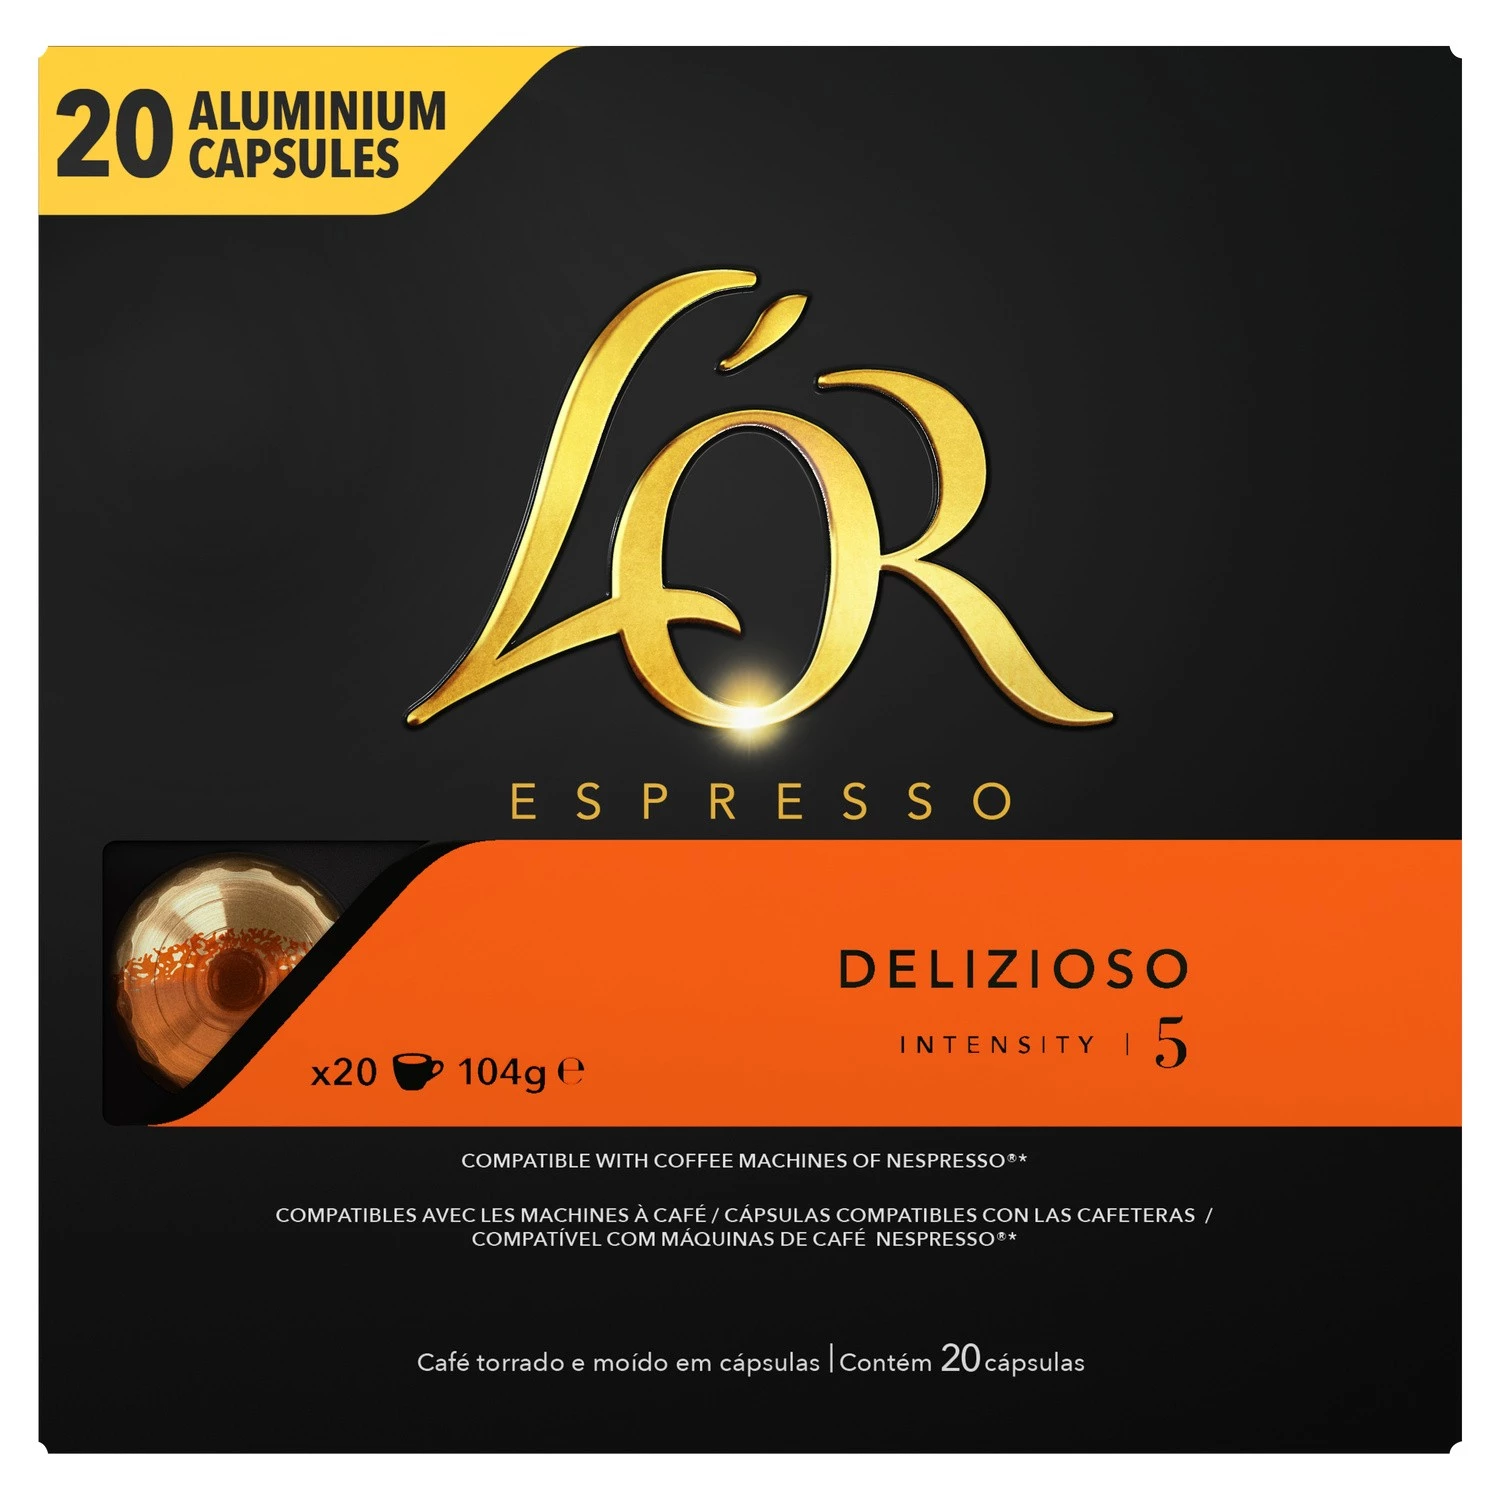 Café Délizioso X20 铝胶囊 104g - L'OR